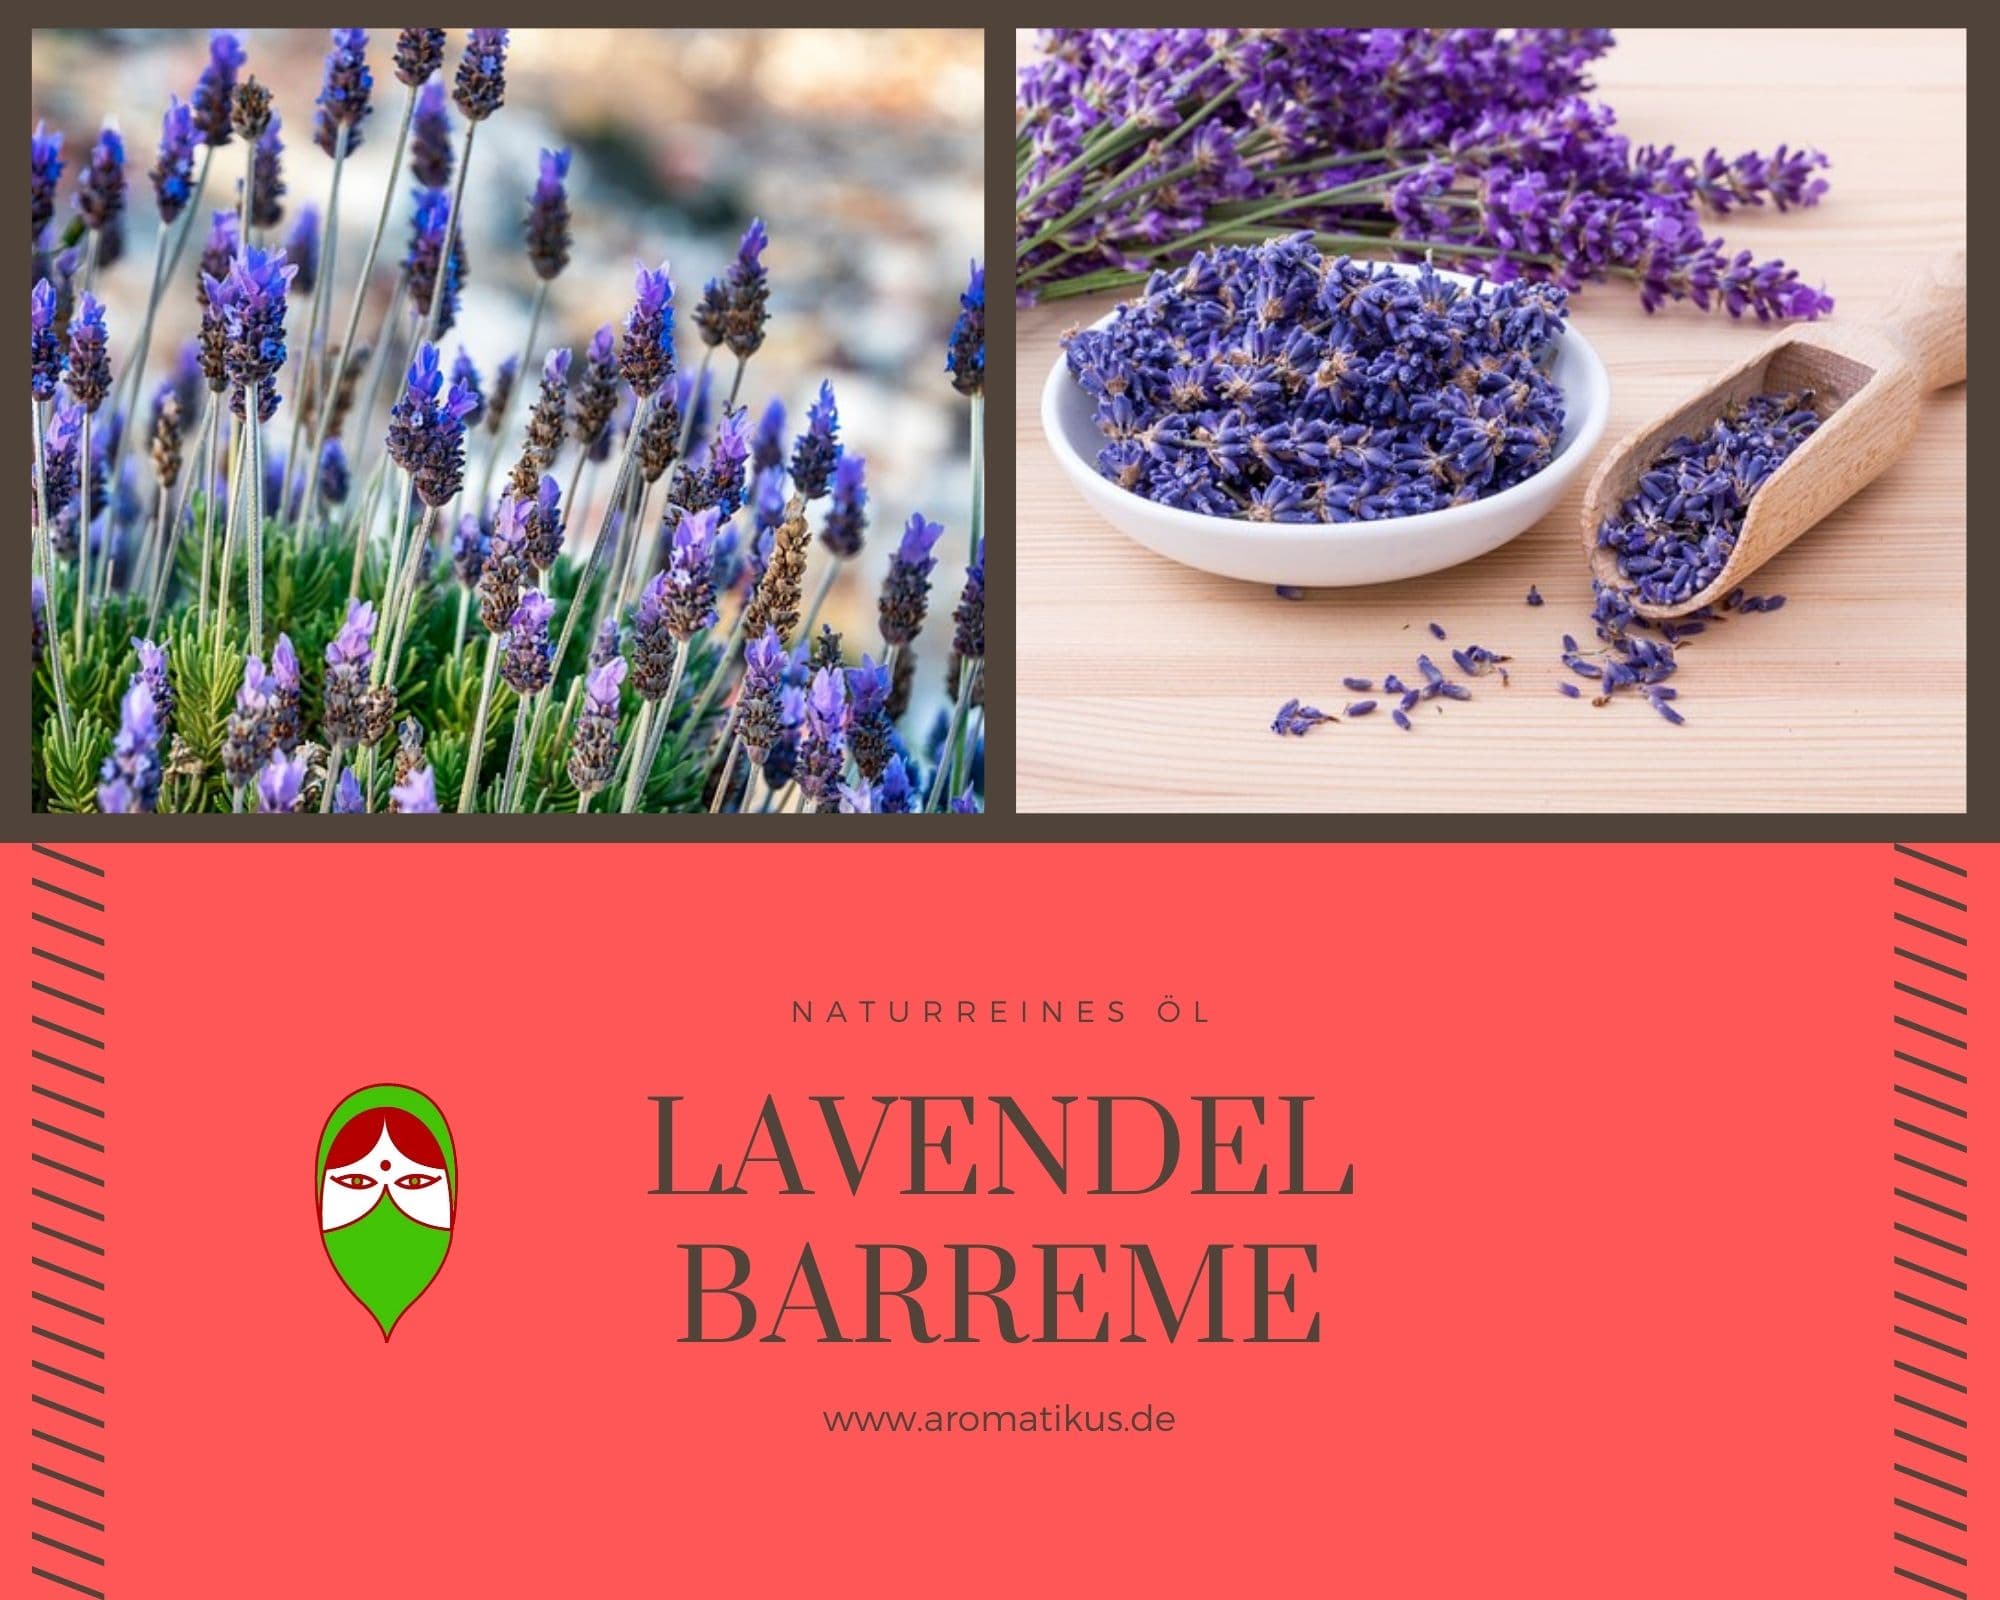 Ätherisches Duftöl Lavendel als naturreines Öl von Aromatikus